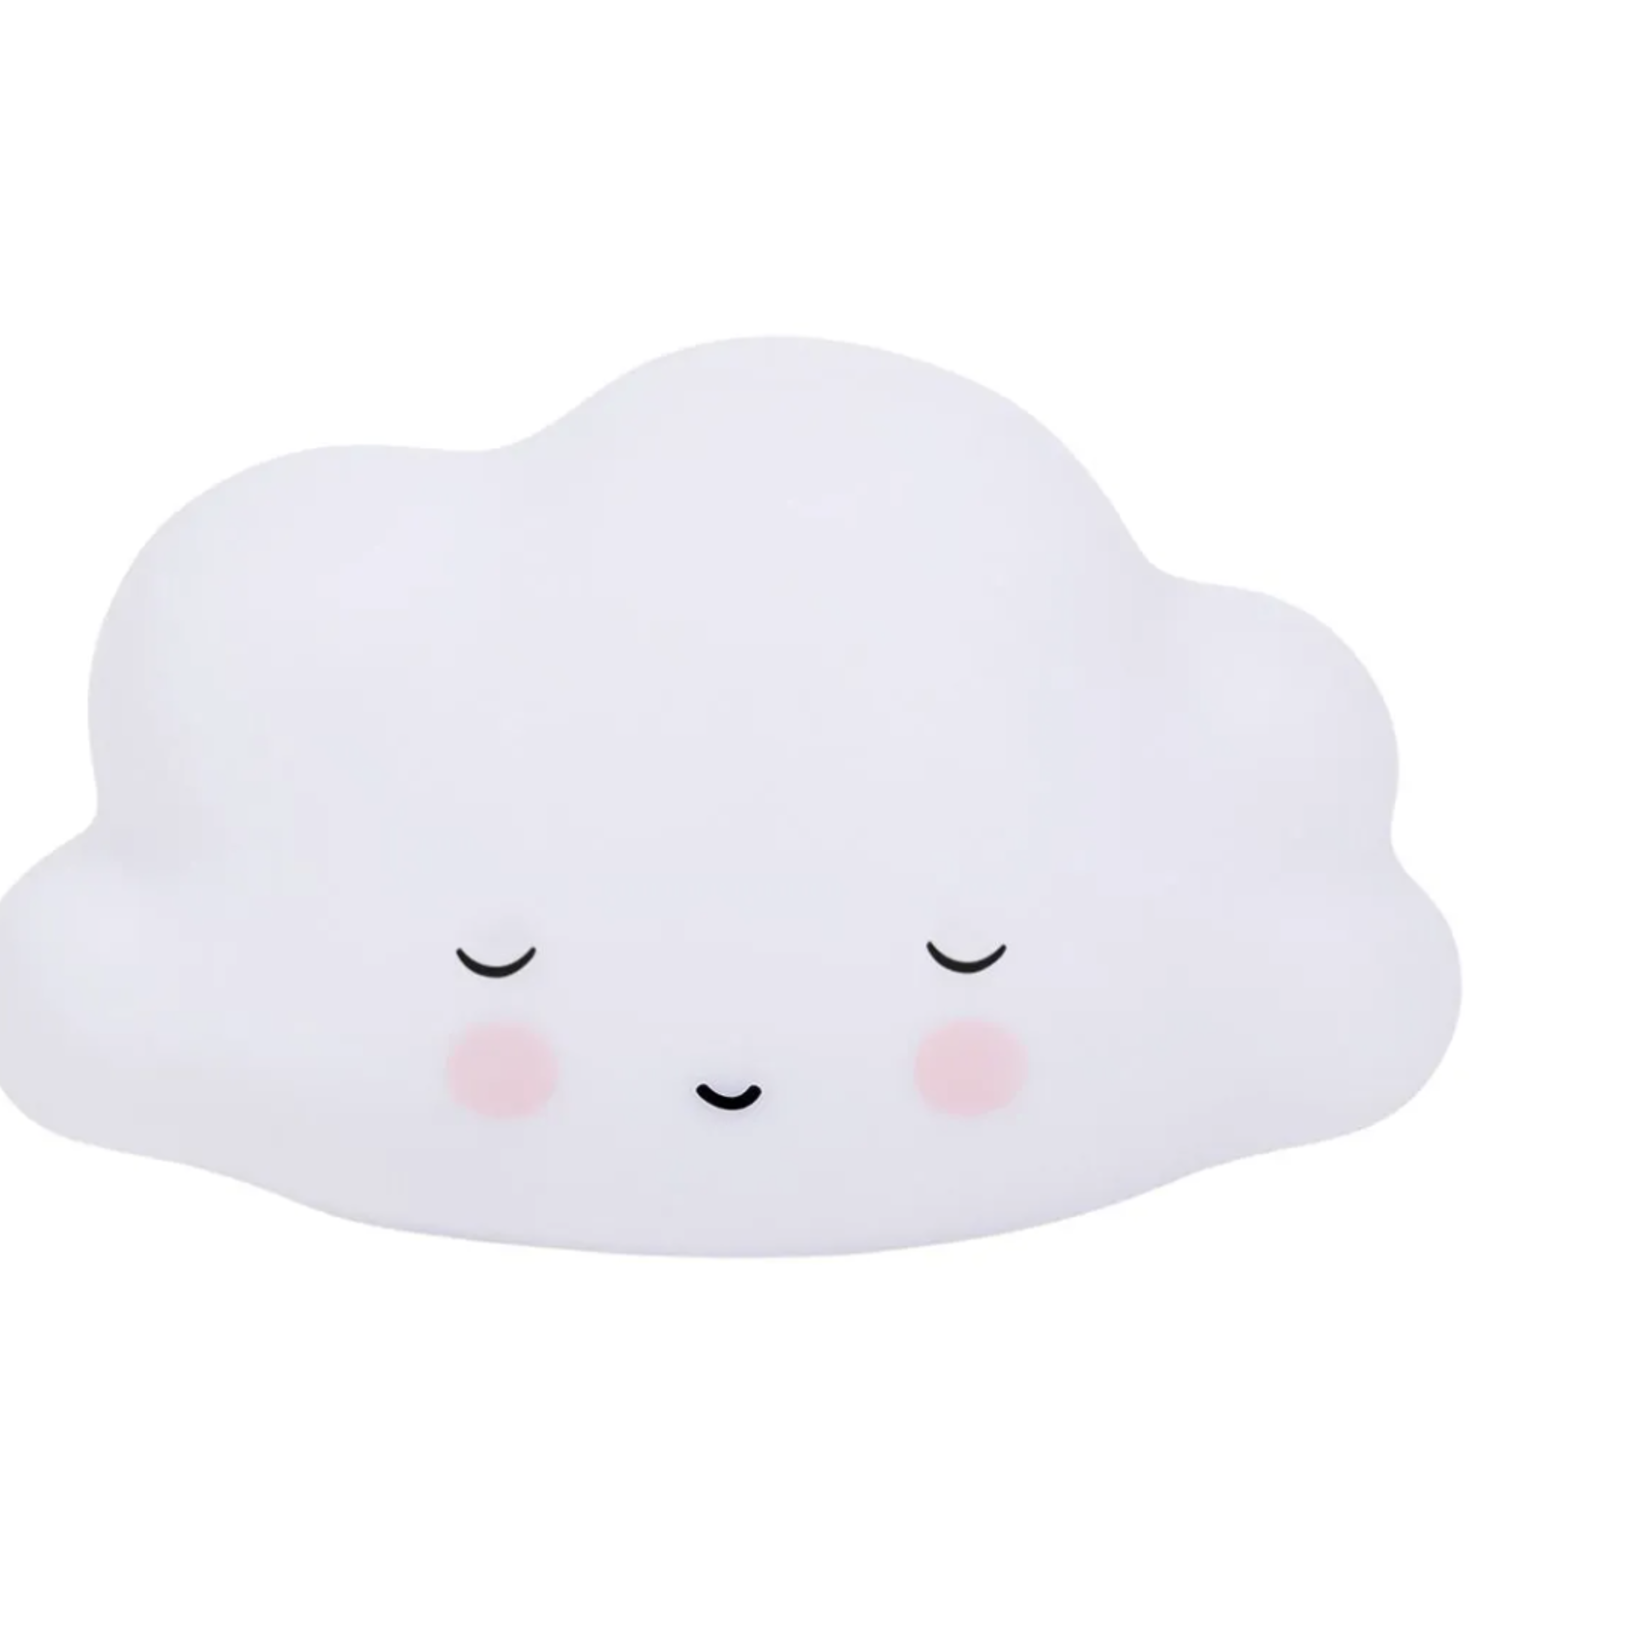 A Little Lovely Company A Little Lovely Company - Little light: Sleeping cloud